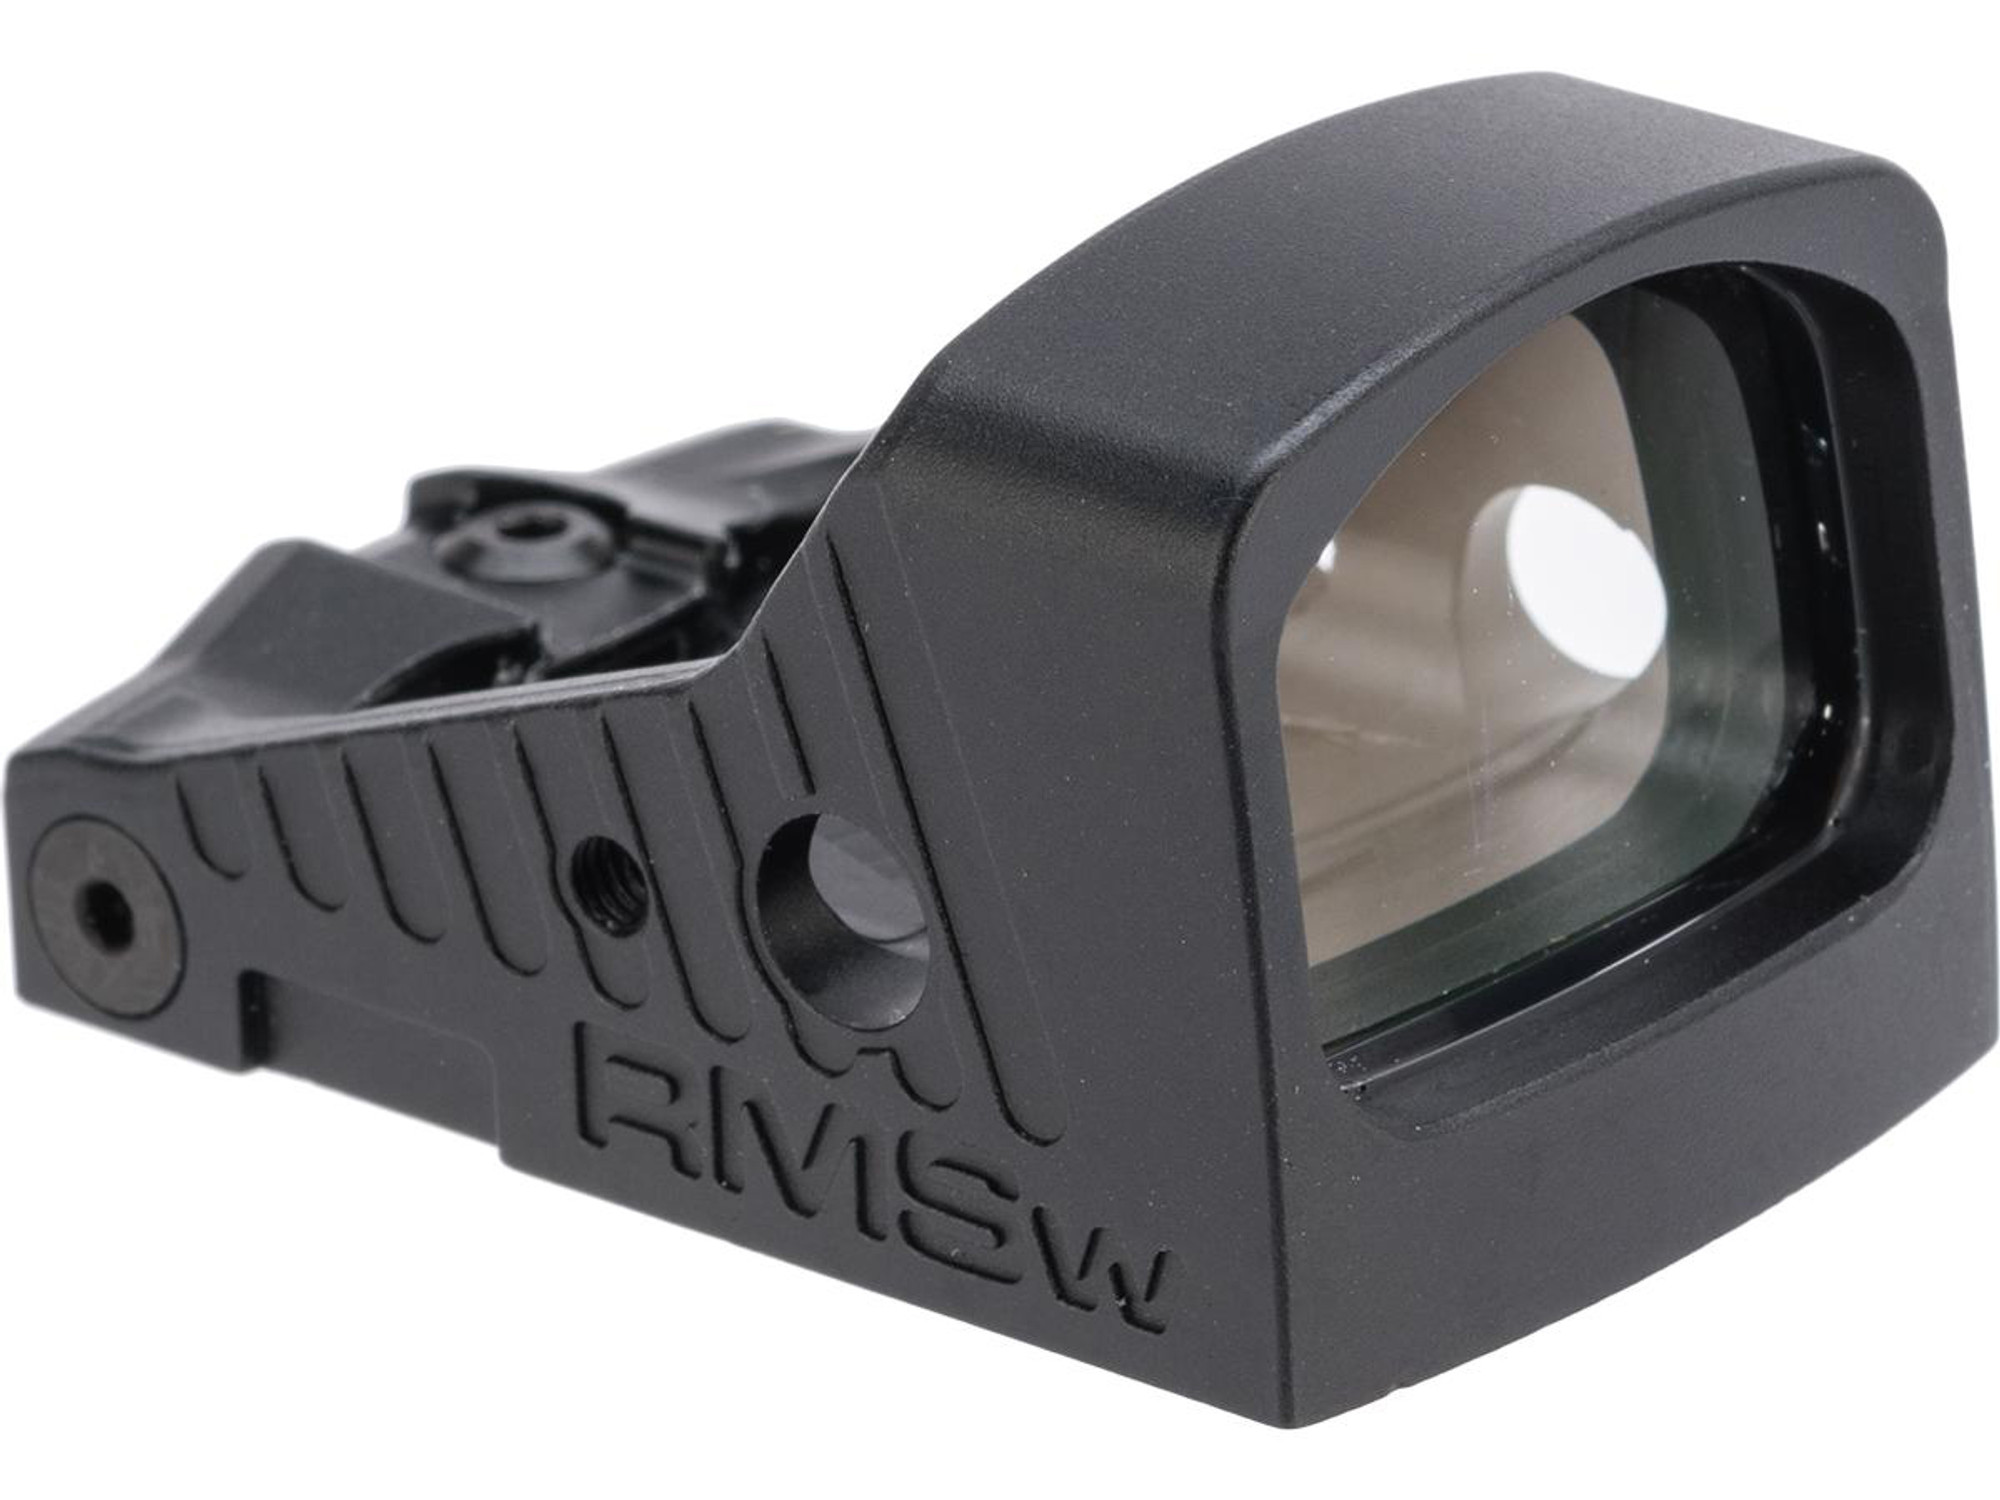 Shield Sights Waterproof Reflex Mini Sight RMS-W